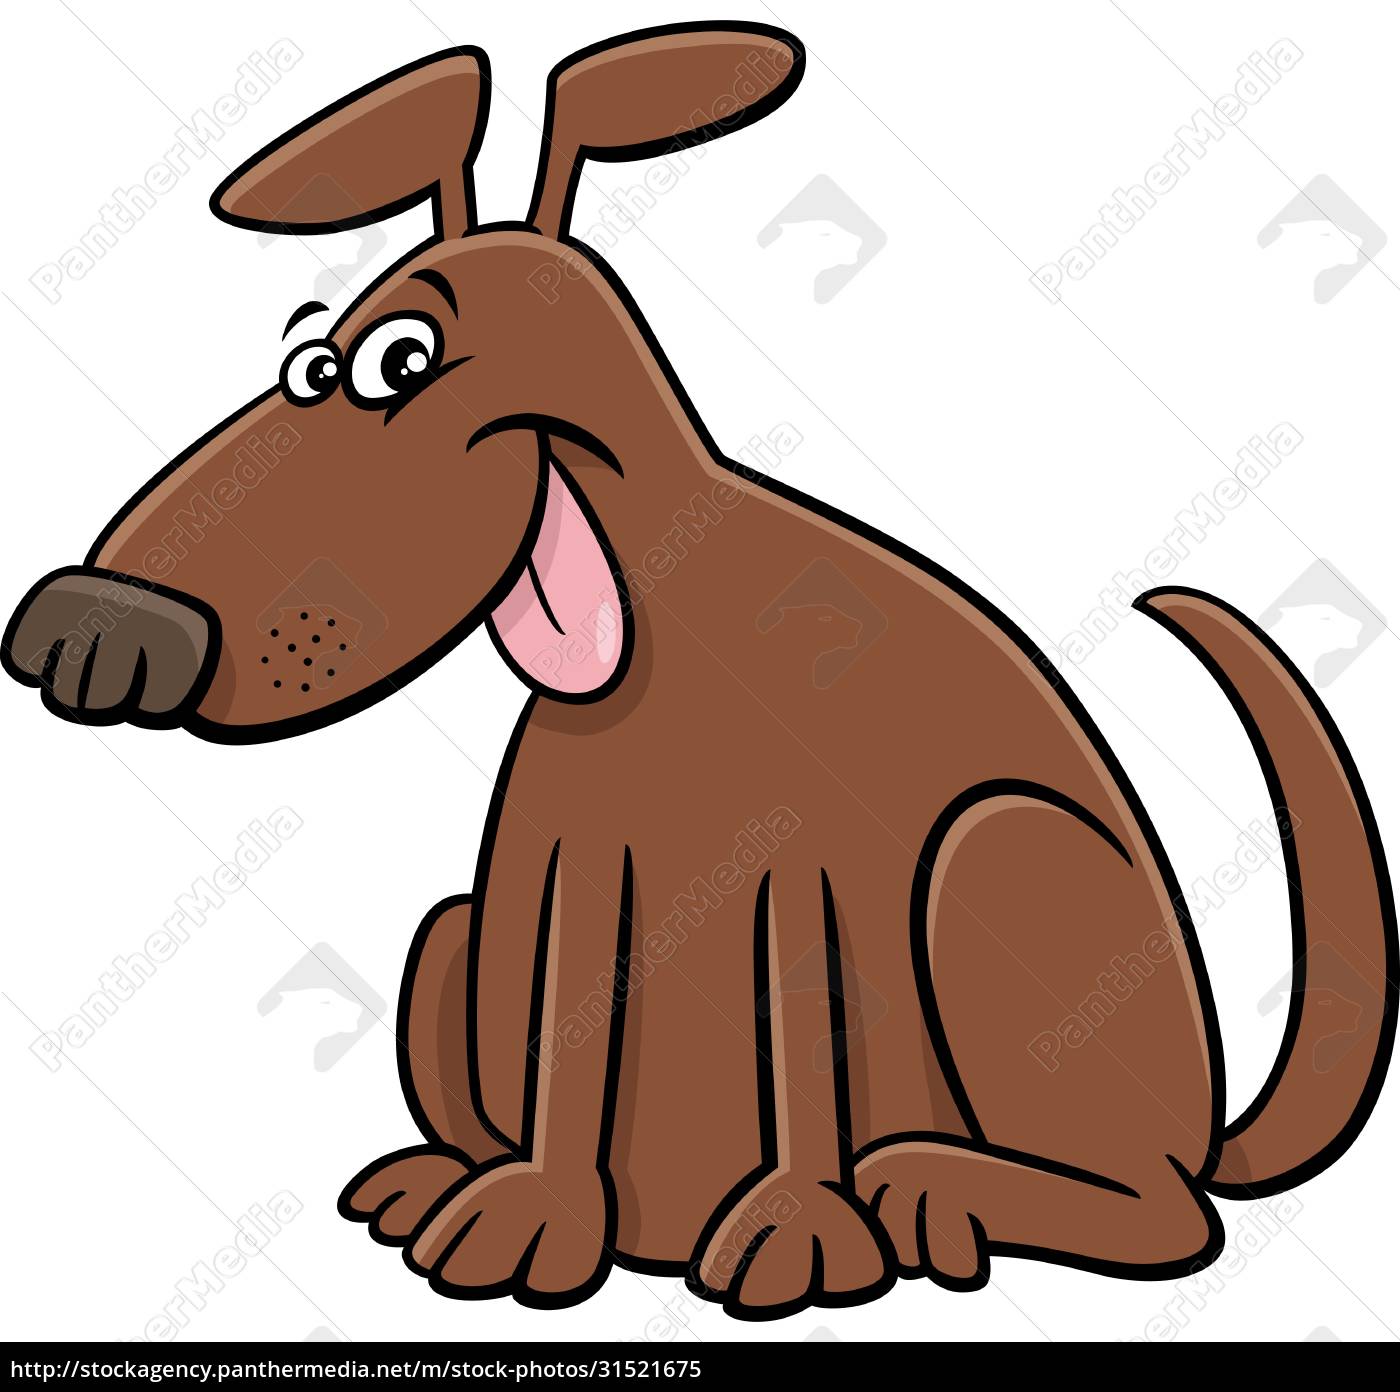 Jeg var overrasket psykologi privatliv tegneserie sjov hund tegneserie dyr karakter - Stockphoto #31521675 |  PantherMedia Billedbureau